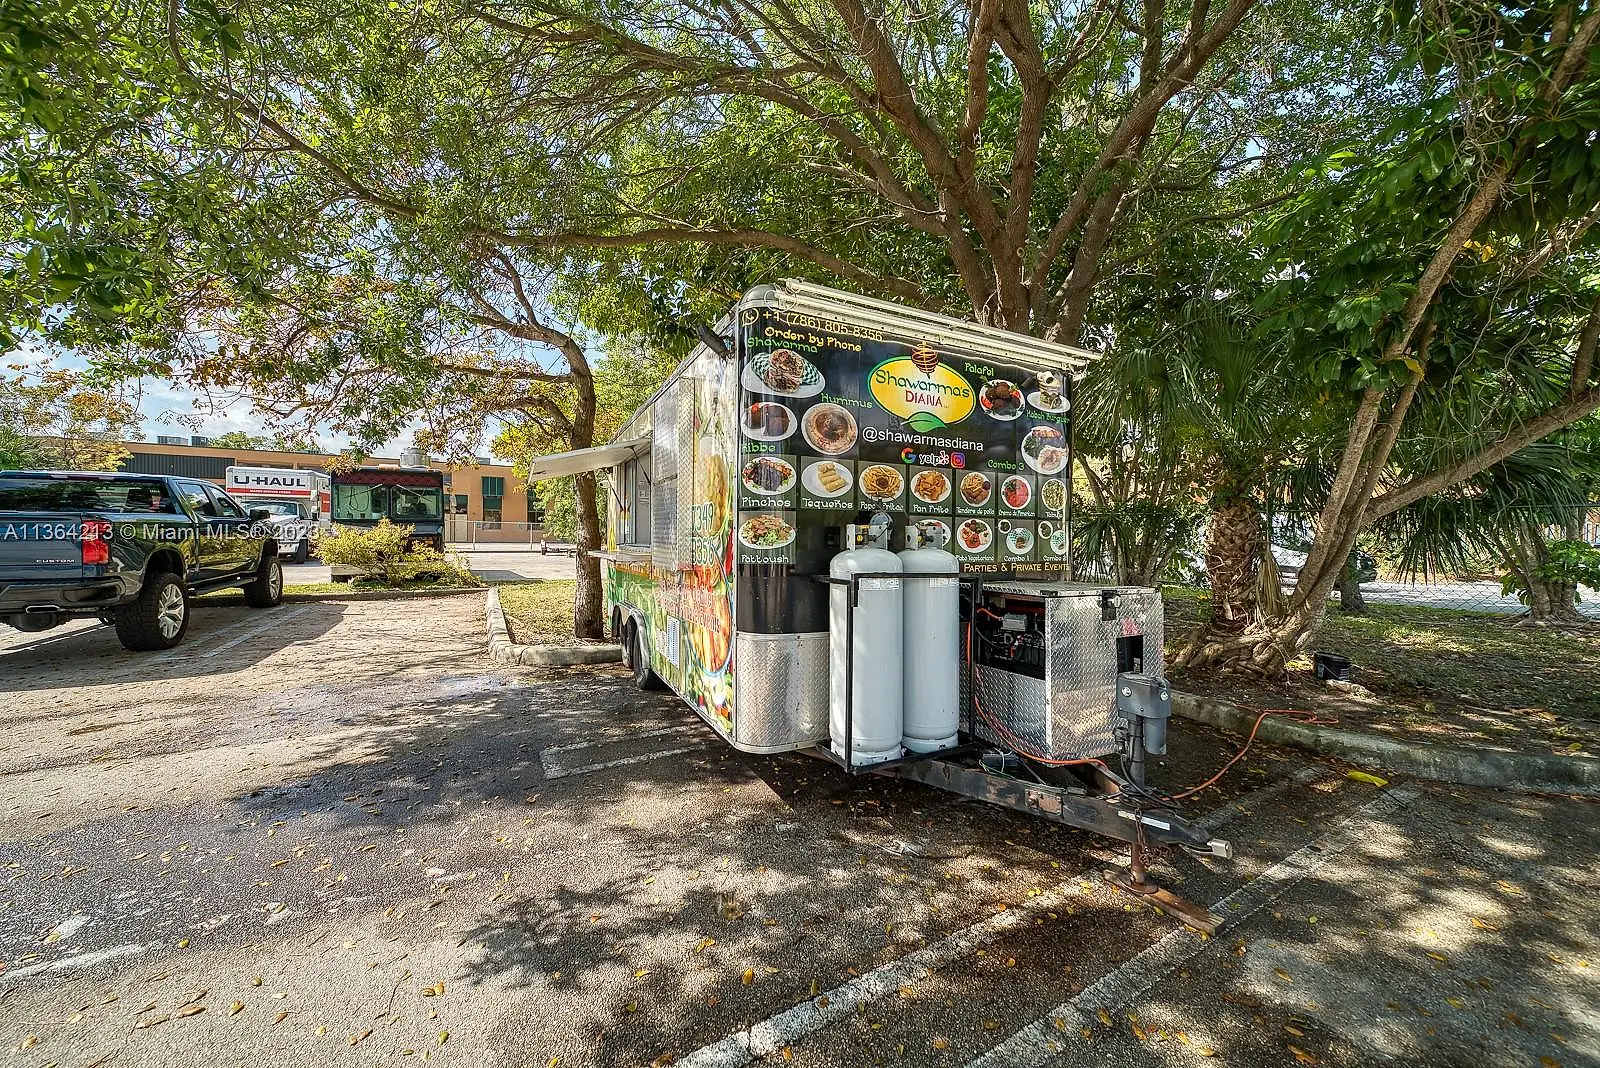 Shawarma Food Truck For Sale In Miami